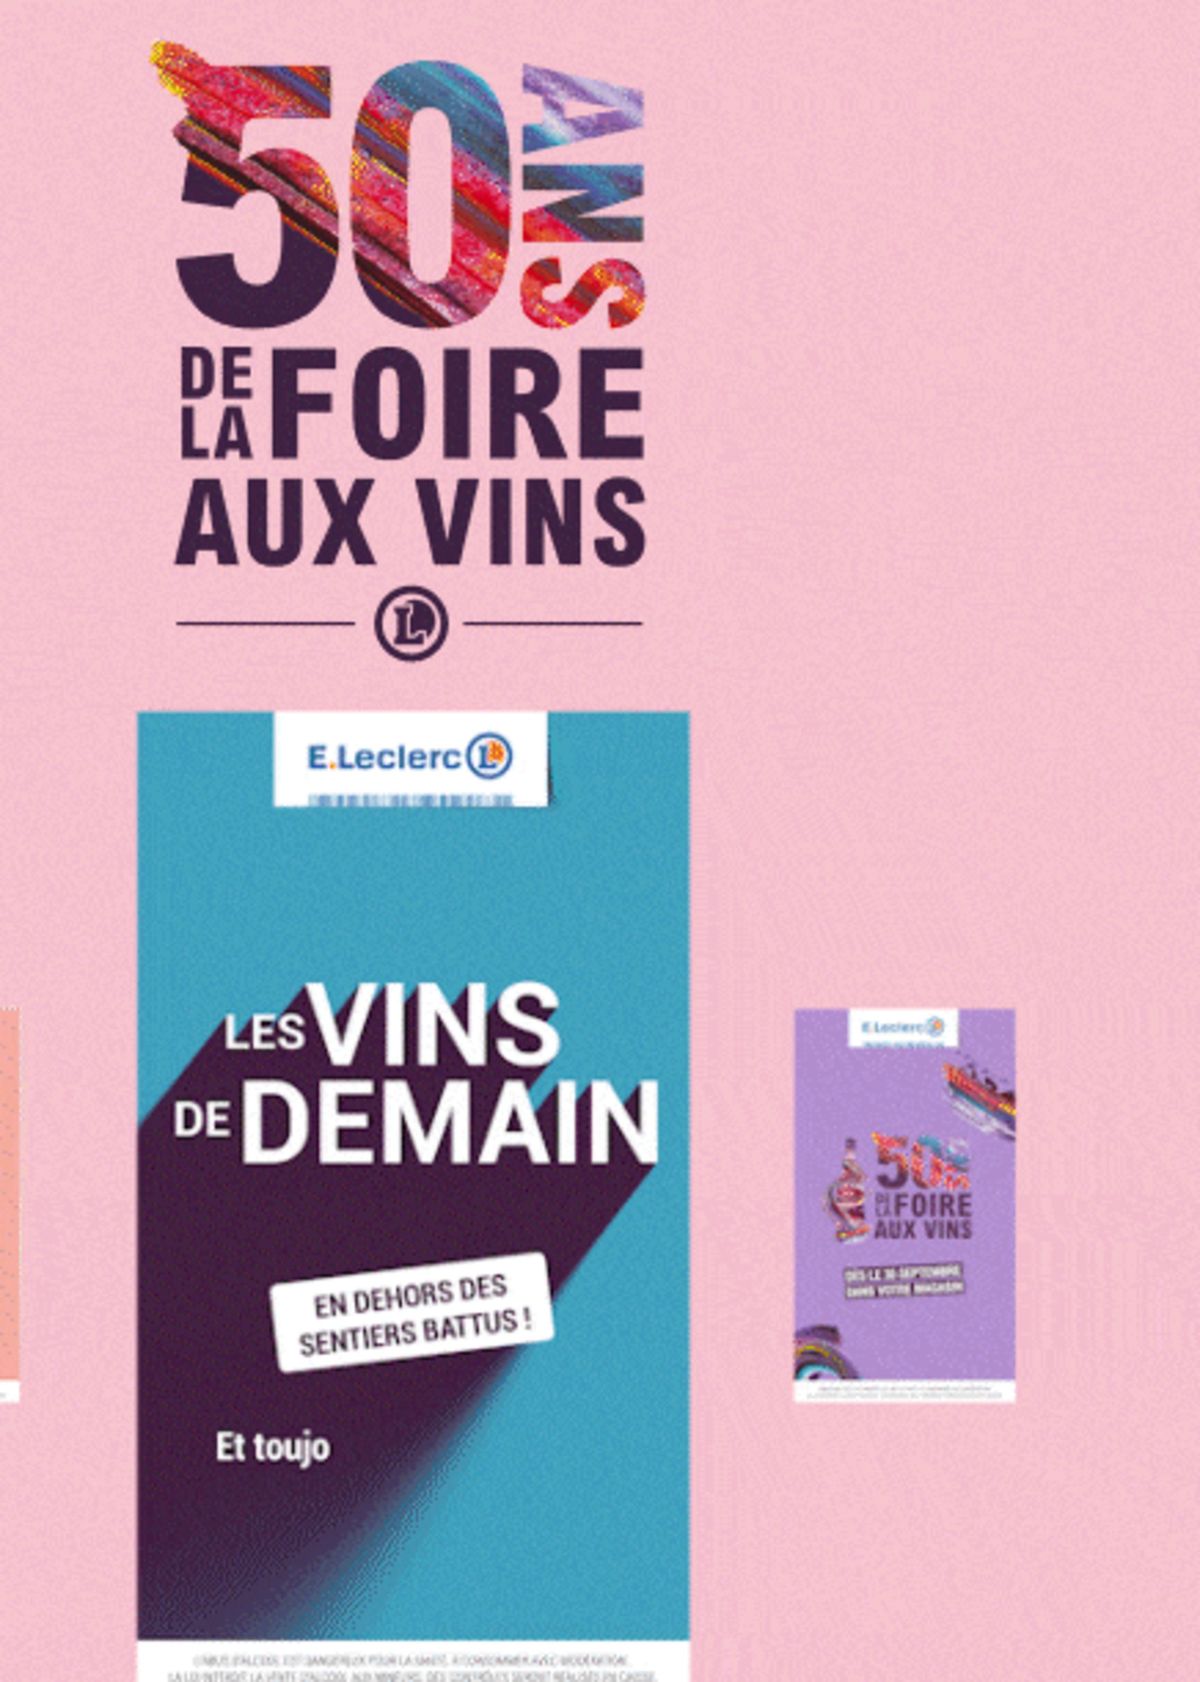 Catalogue Foire Aux Vins - Mixte, page 01188